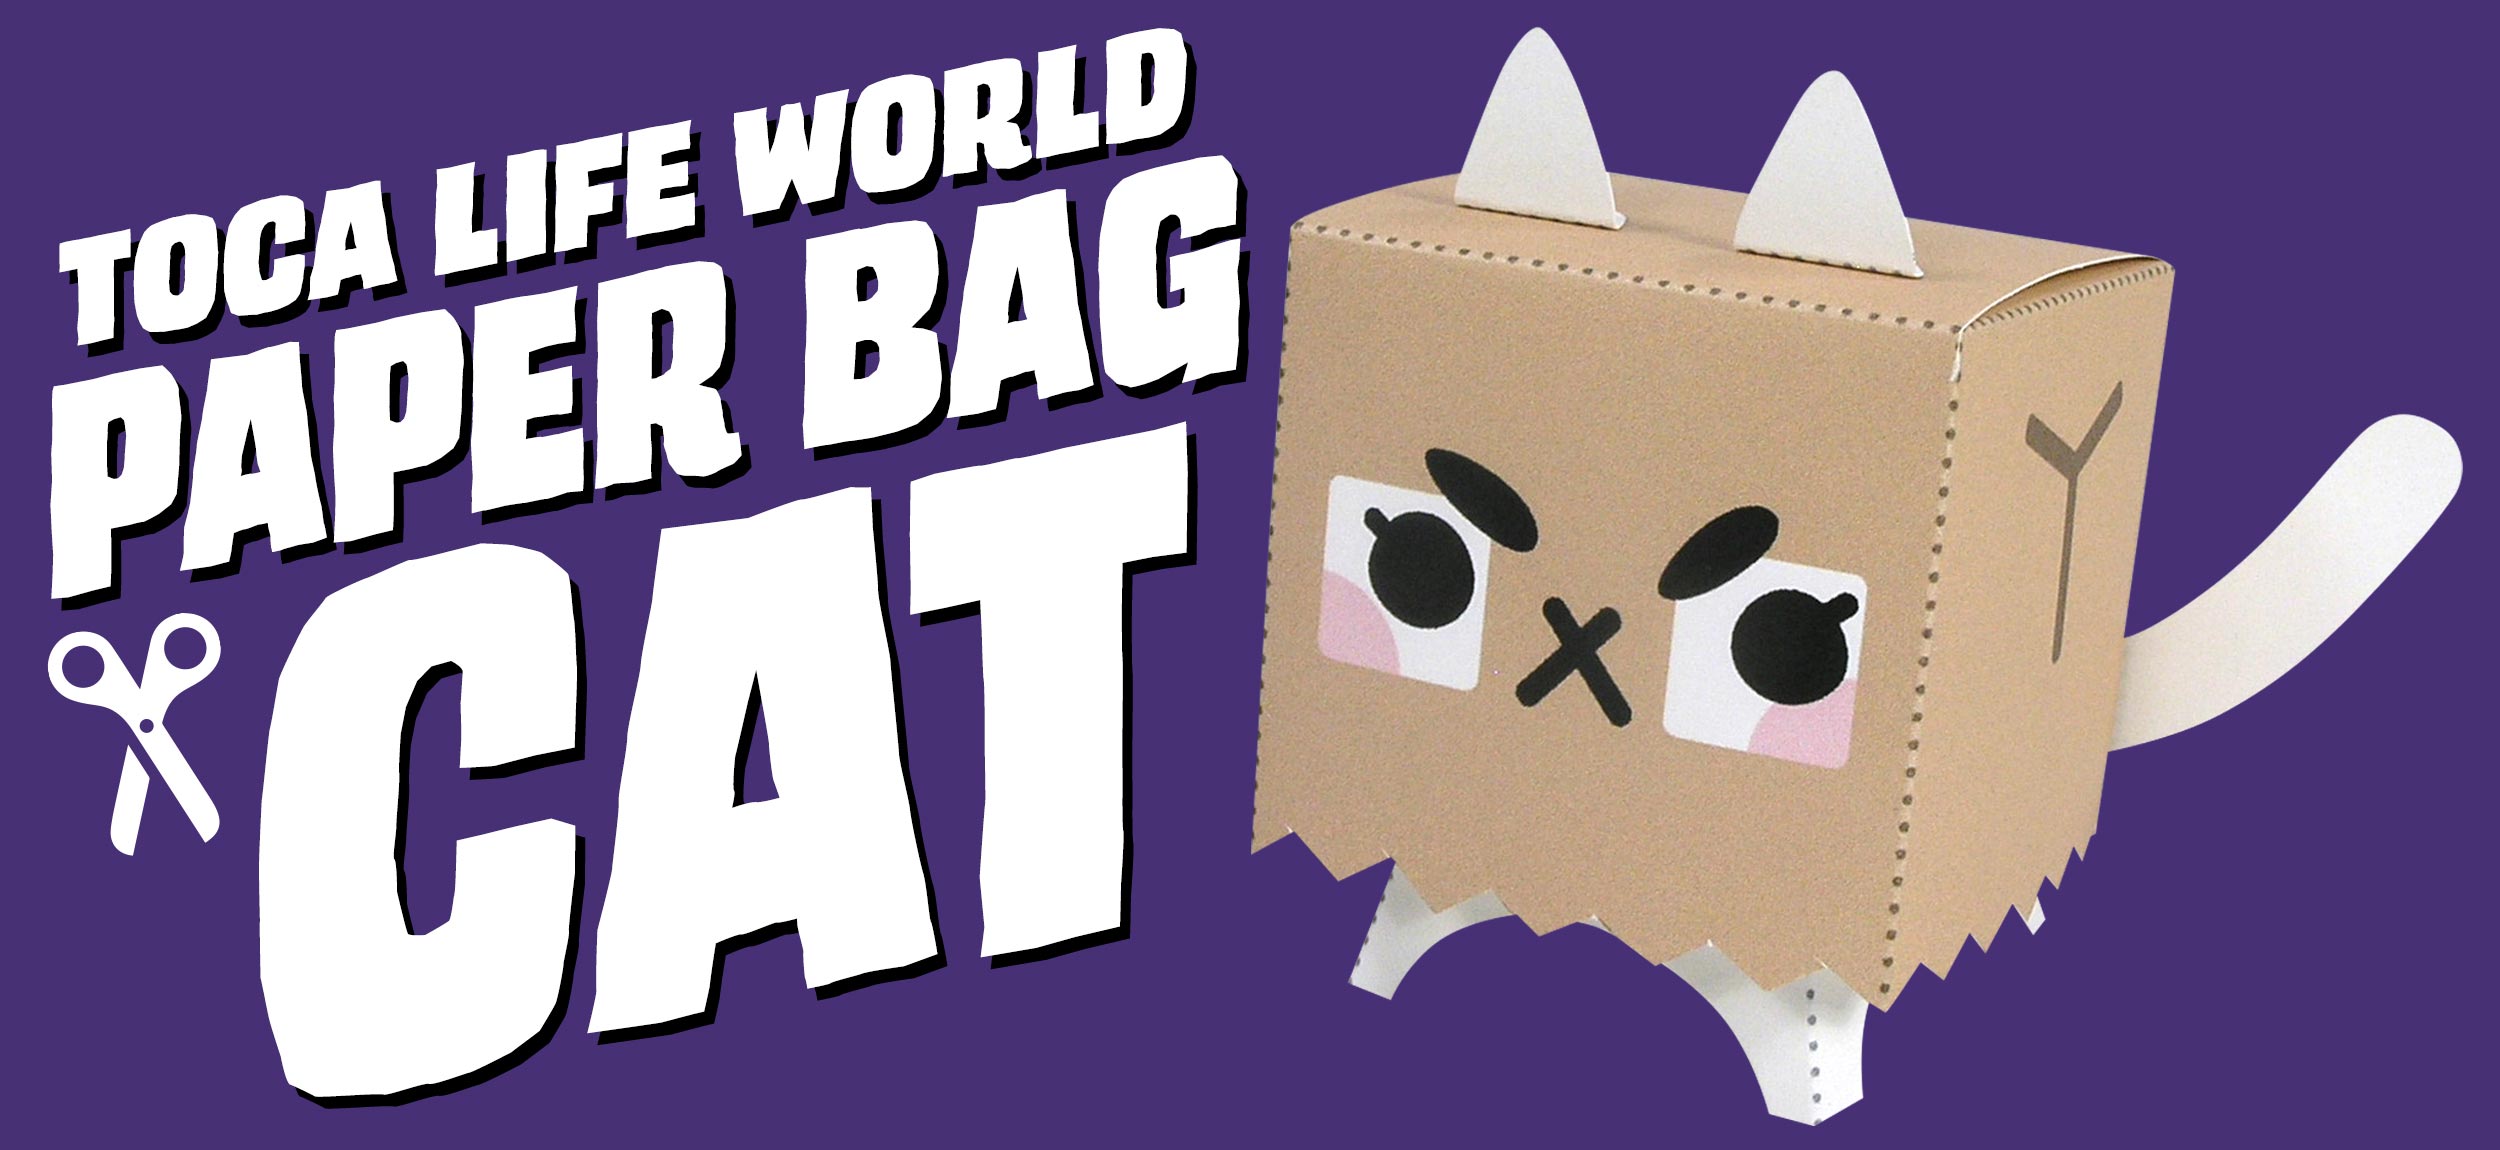 Toca Life World Papercraft Paper Bag Cat